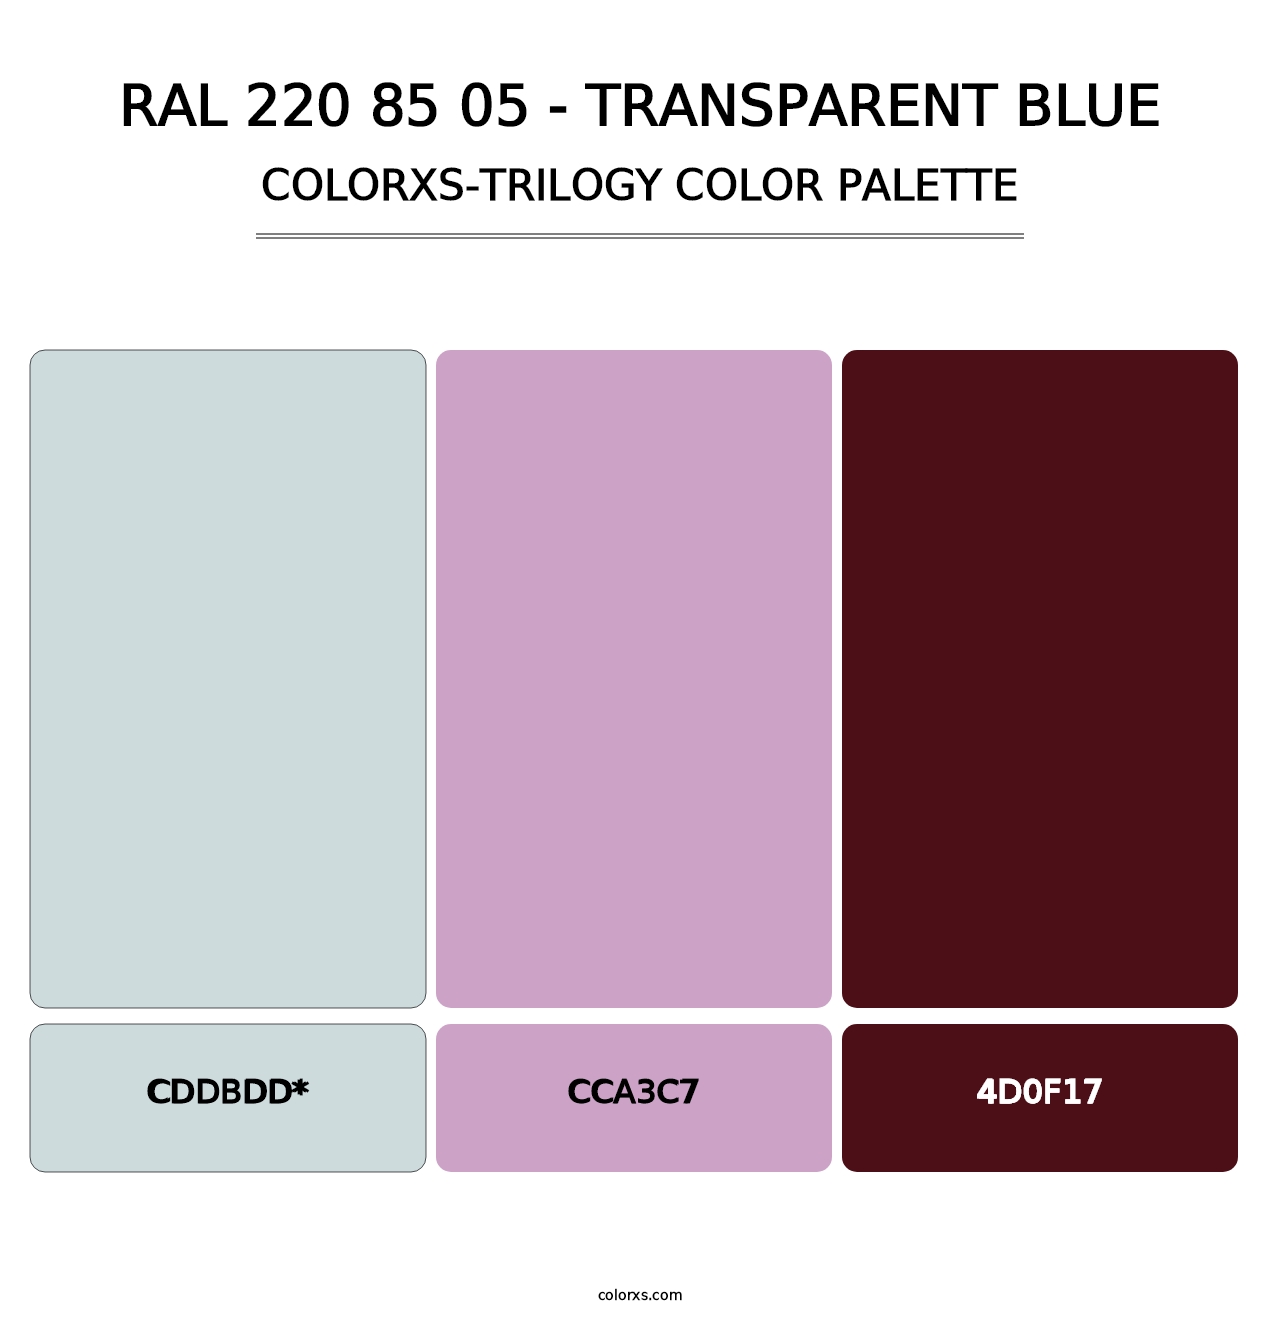 RAL 220 85 05 - Transparent Blue - Colorxs Trilogy Palette